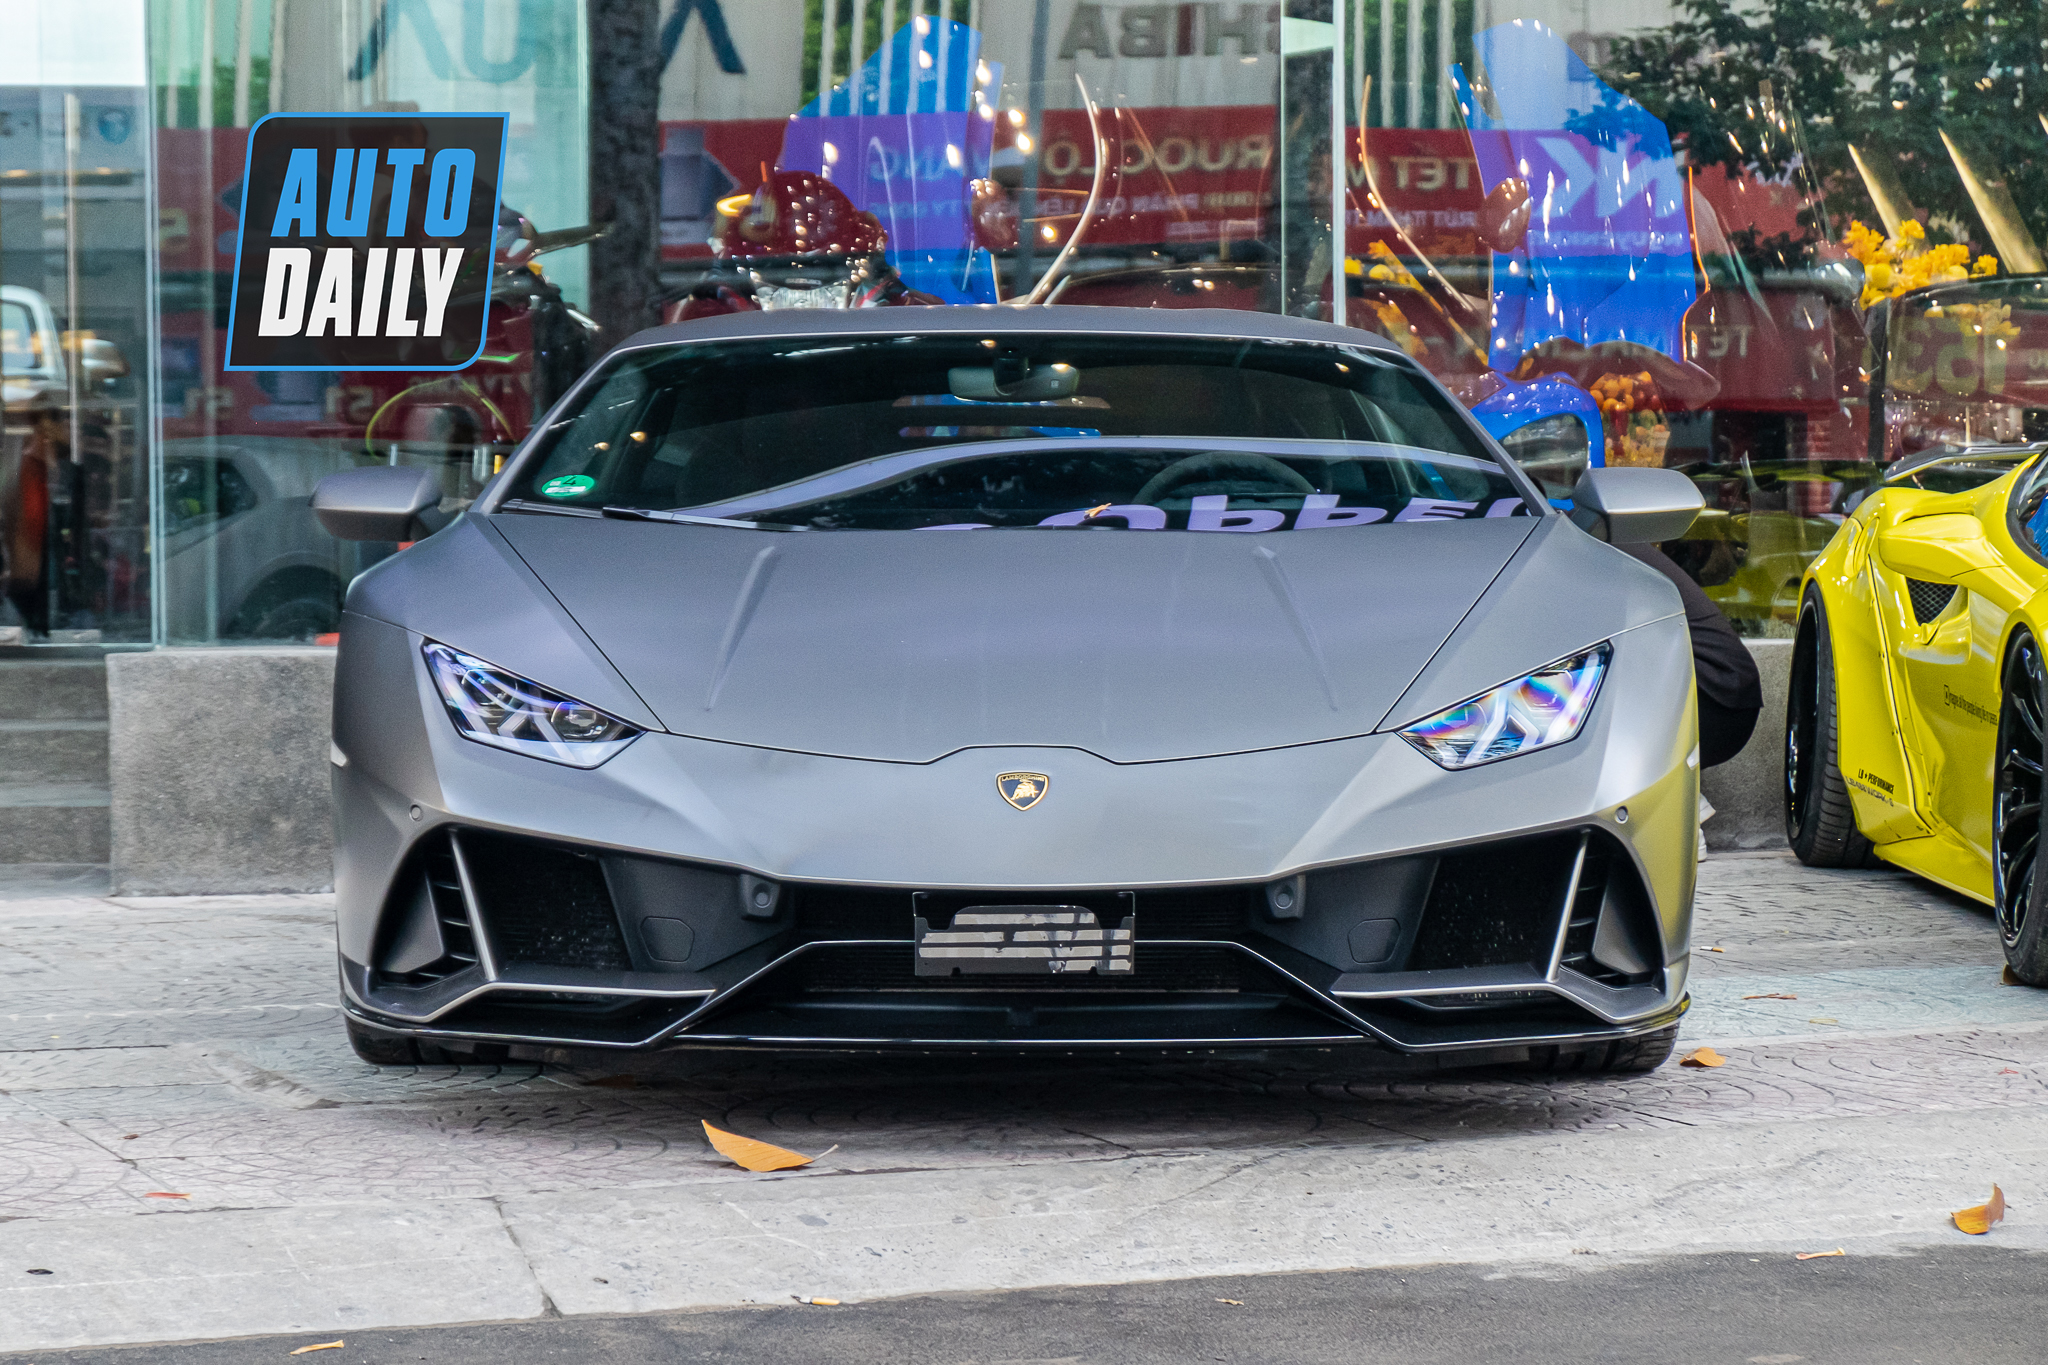 Có gì đặc biệt trên Lamborghini Huracan EVO AWD triệu đô độc nhất Việt Nam? lamborghini-huracan-evo-awd-autodaily-3.JPG